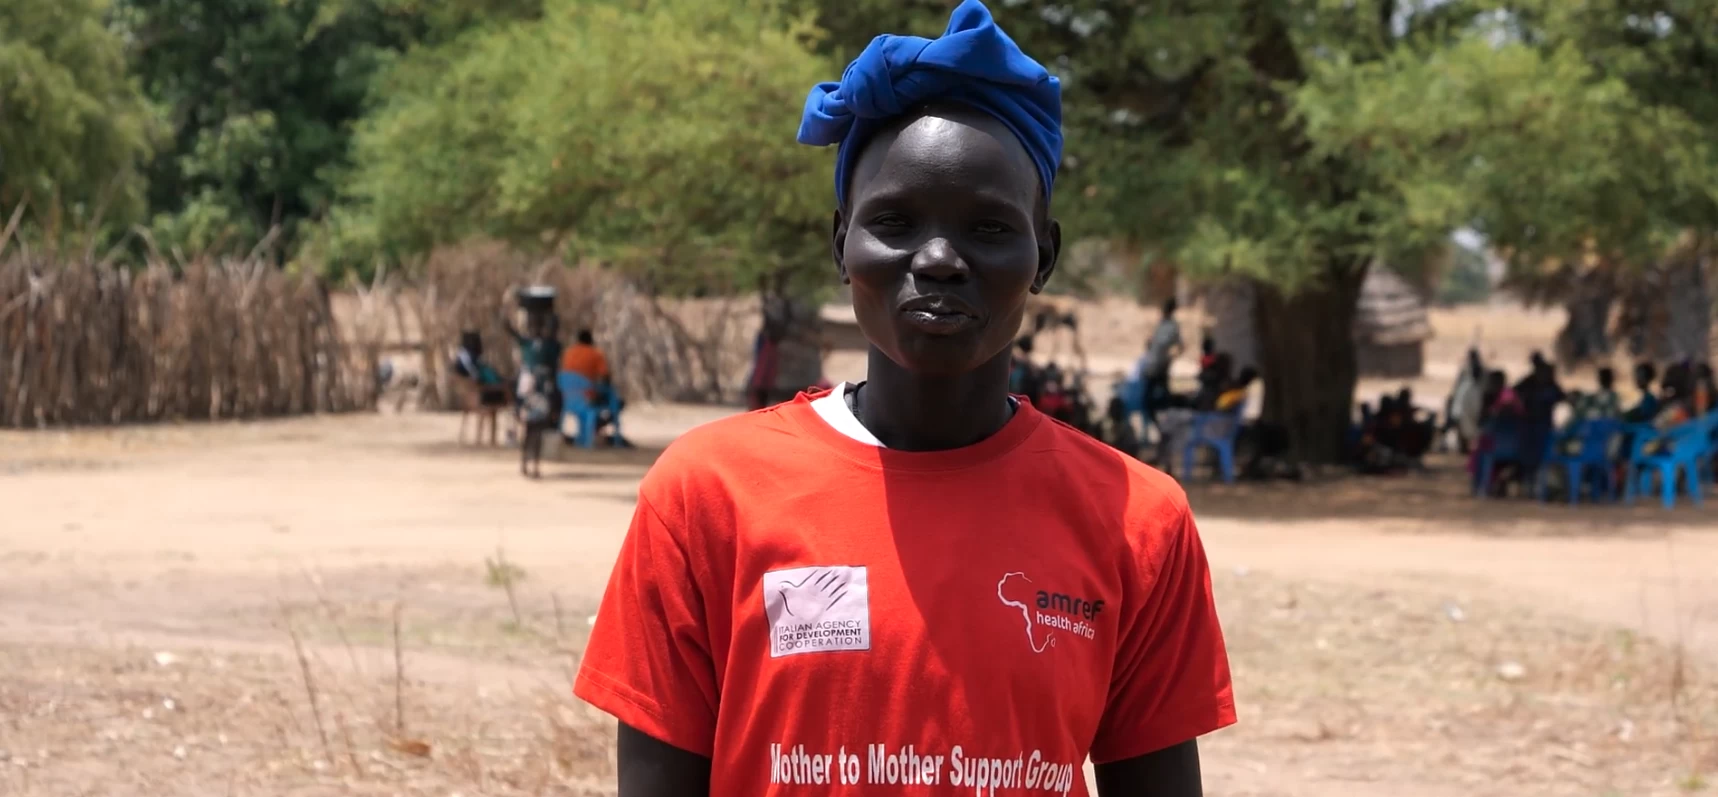 África de las niñas.  La historia de Nyandhier, madre y activista en Sudán del Sur